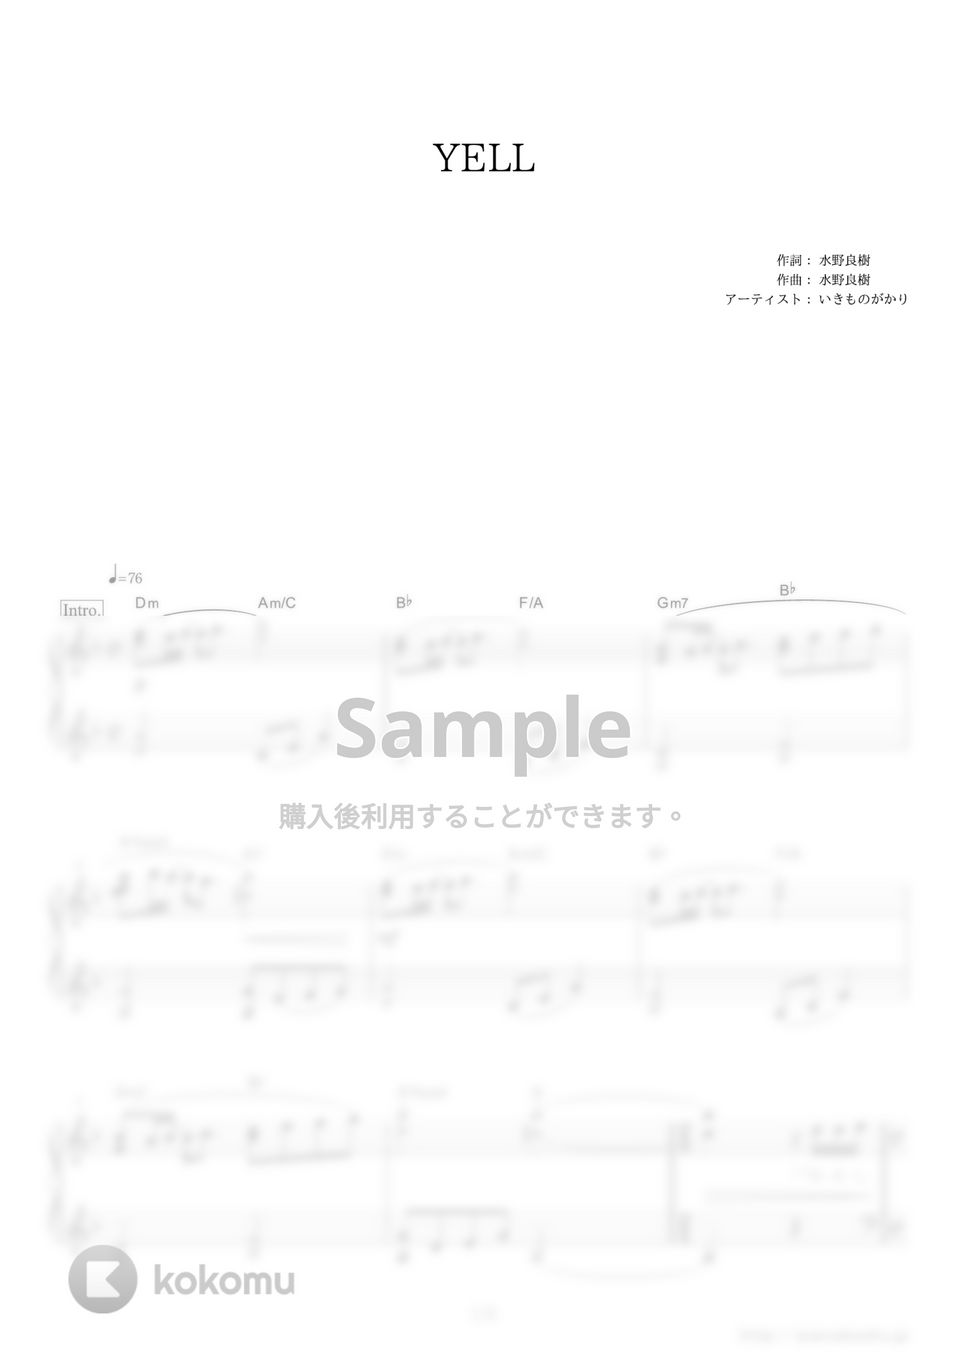 いきものがかり - YELL (第76回NHK全国学校音楽コンクール・中学校の部の課題曲) by ピアノの本棚